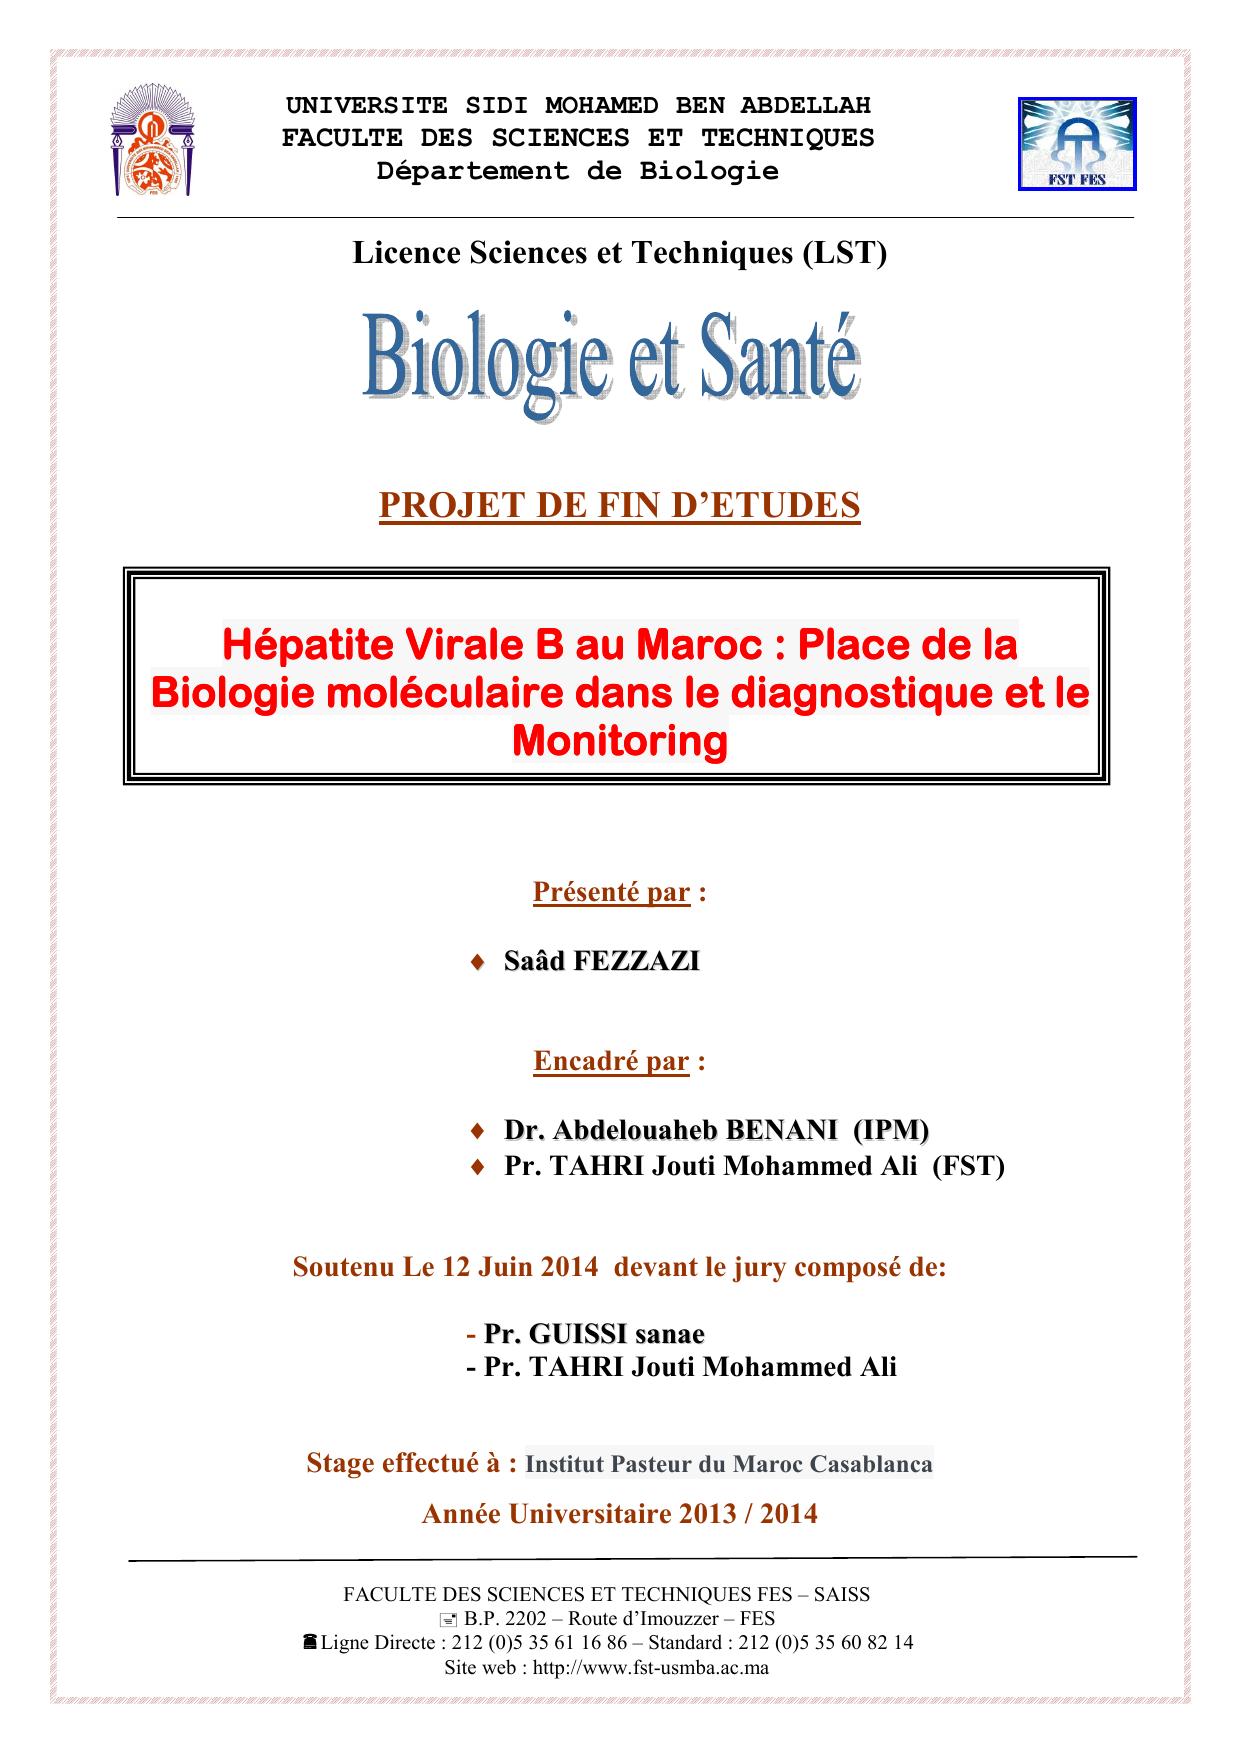 Hépatite Virale B au Maroc : Place de la Biologie moléculaire dans le diagnostique et le Monitoring